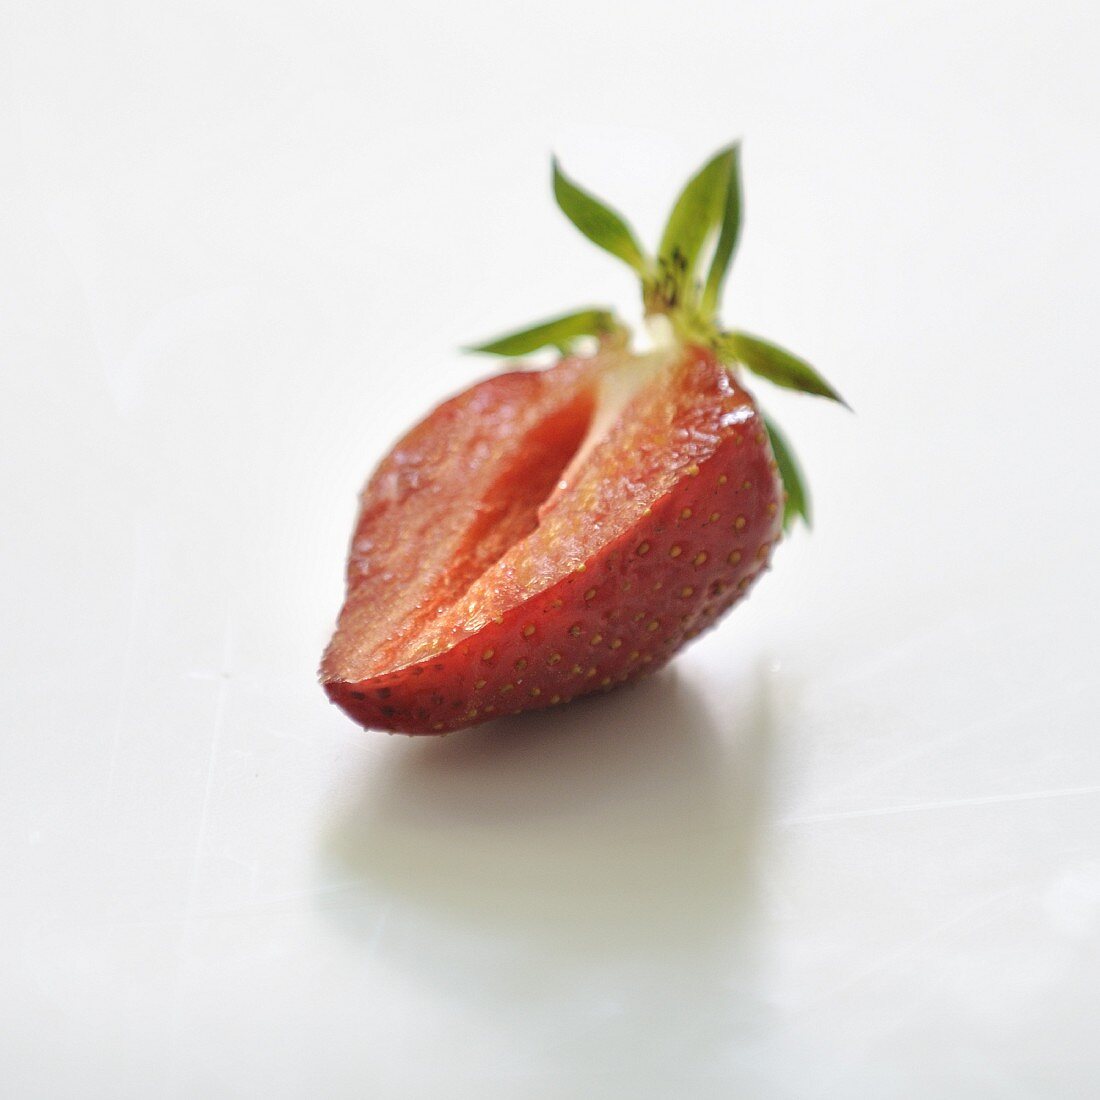 Halbierte Erdbeere vor weißem Hintergrund